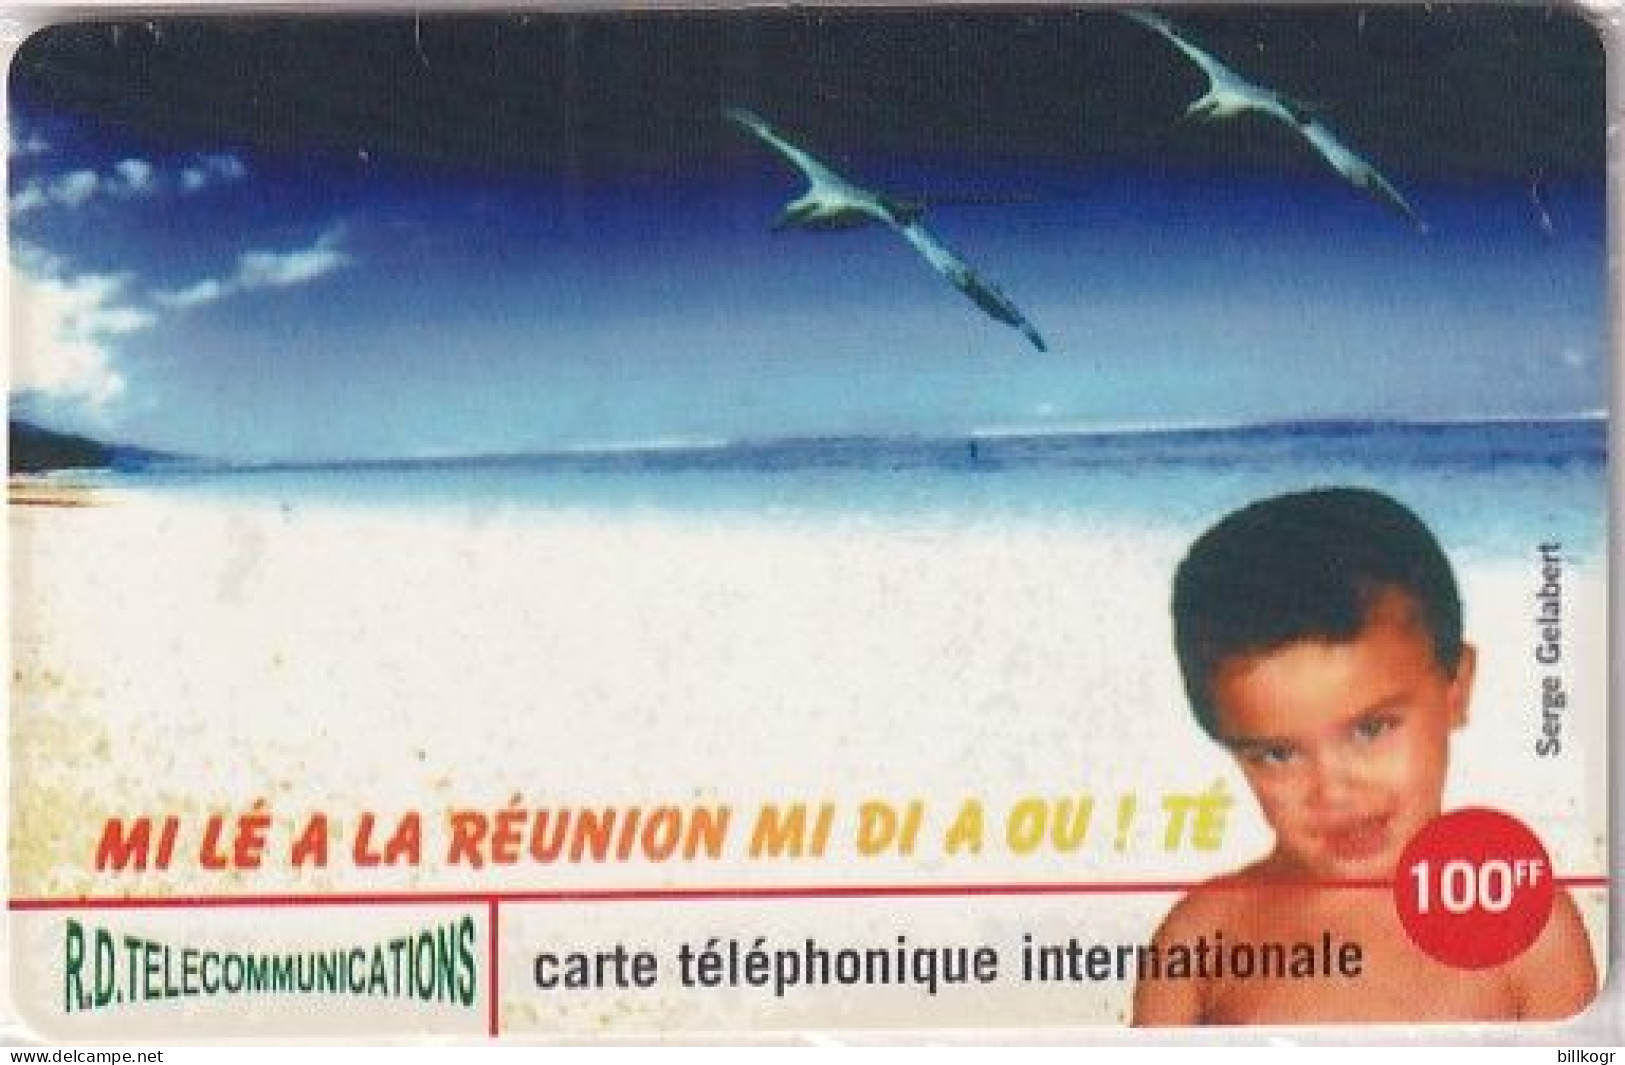 REUNION - Child Of Reunion, R.D. Prepaid Card 100 FF, Tirage 1000, Mint - Réunion